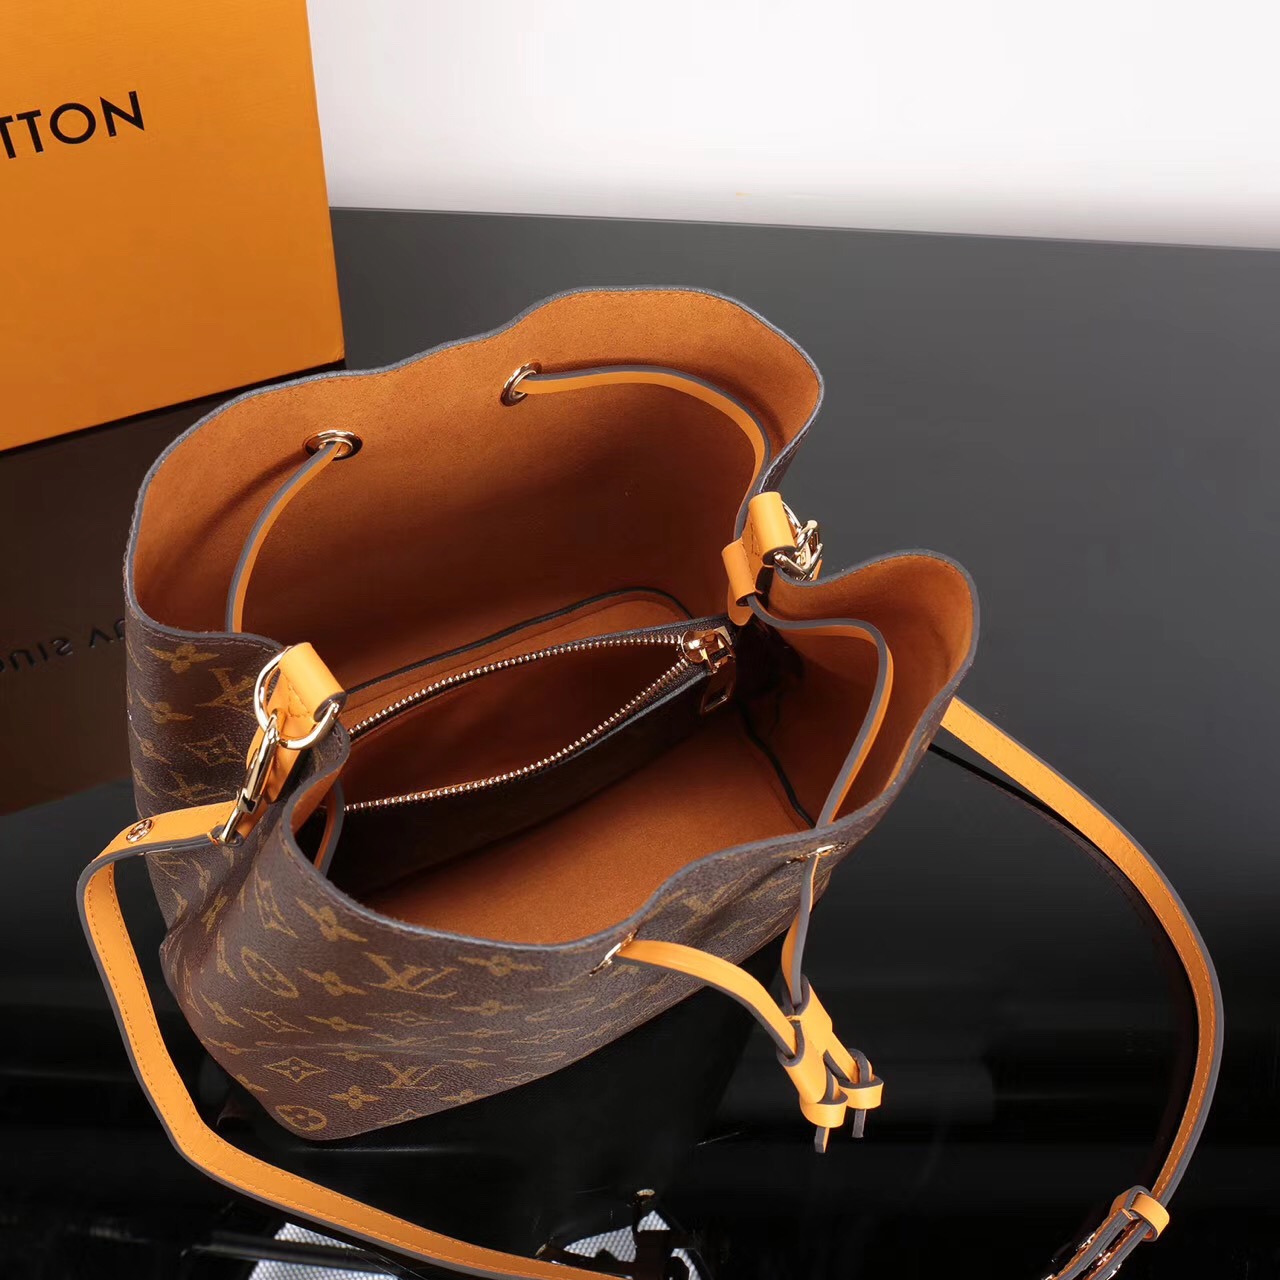 LV Louis Vuitton M43430 bags Monogram NEONOE Handbags Orange [LV1119] - $339.00 : Luxury Shop